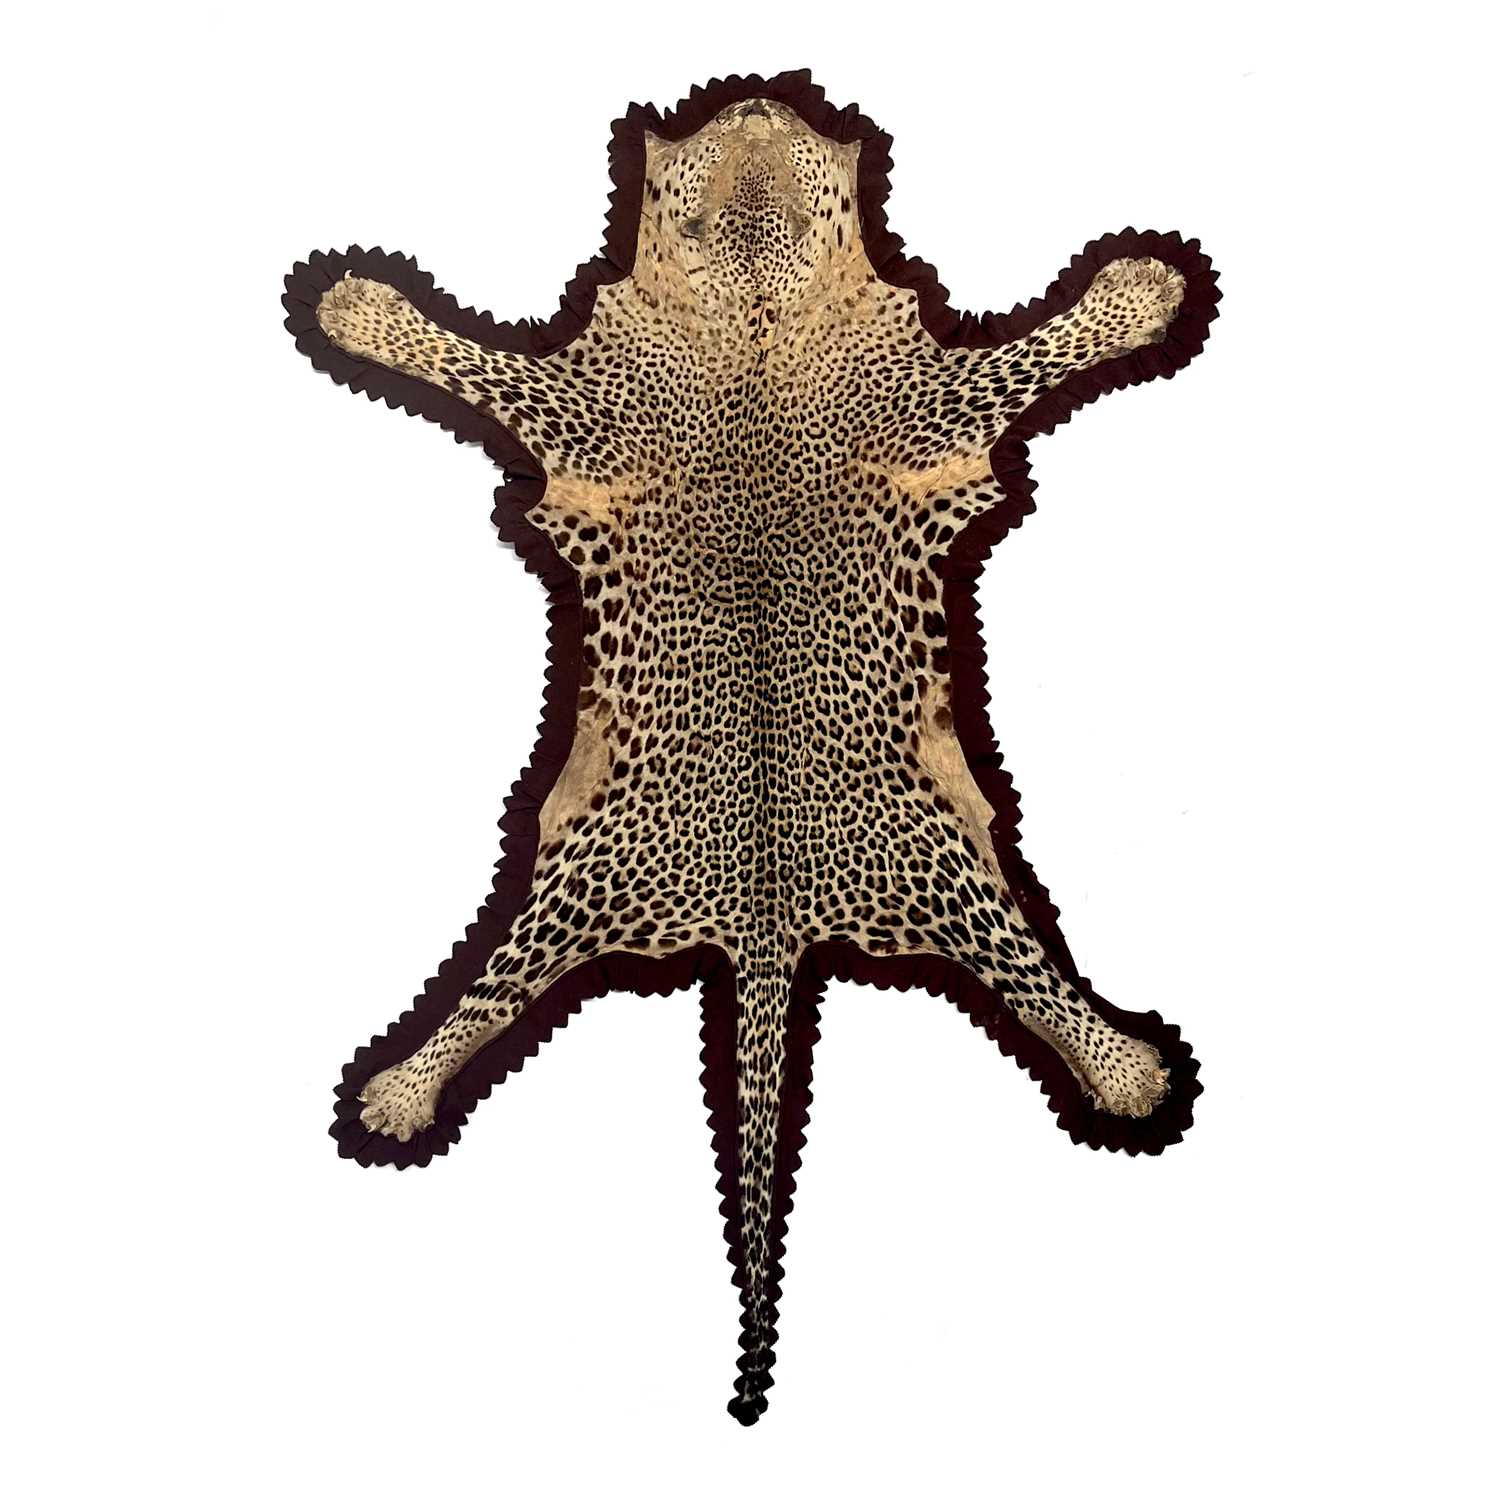 A Rowland Ward leopard skin taxidermy rug, brown felt backing, original label, circa 1900 - Image 2 of 2